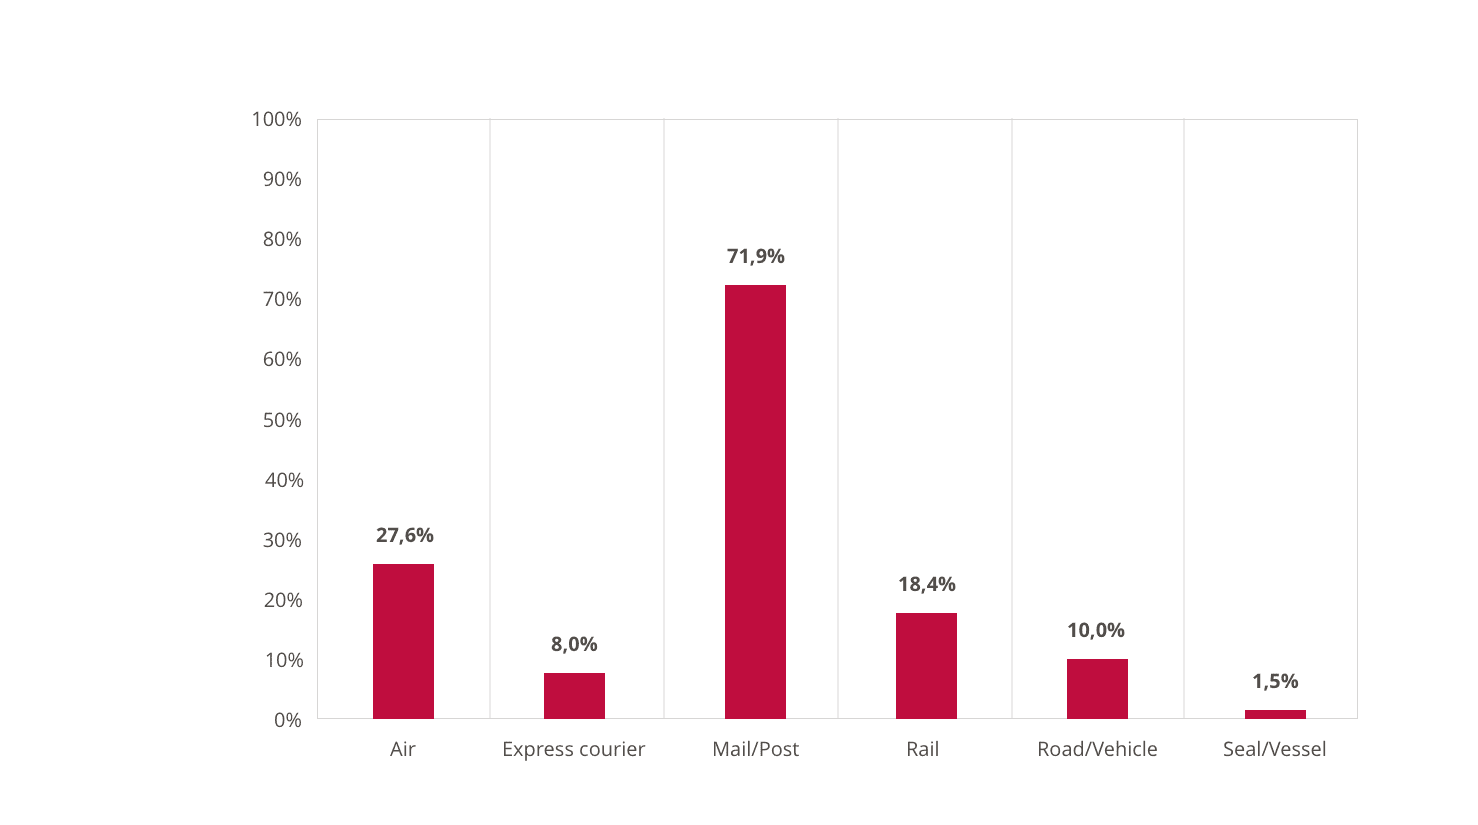 Andelen af tilbageholdelser i forbindelse med onlinesalg inden for hver transportform (online og ikke online)